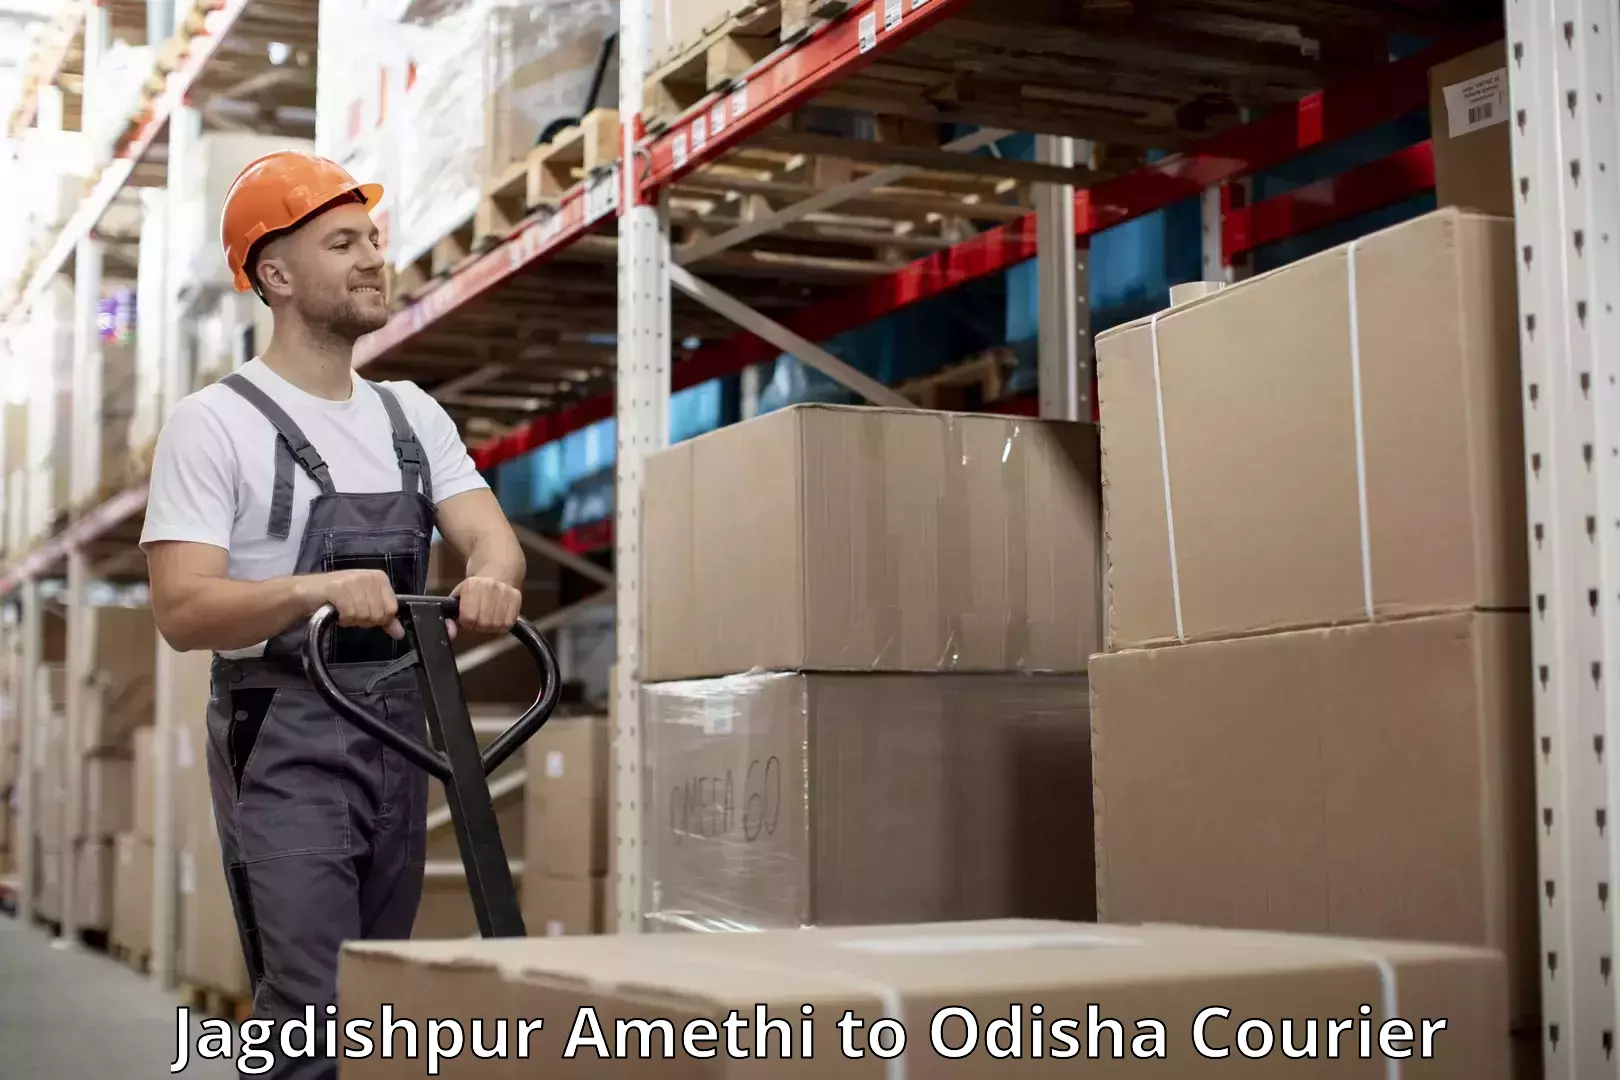 Luggage transport service Jagdishpur Amethi to Odisha